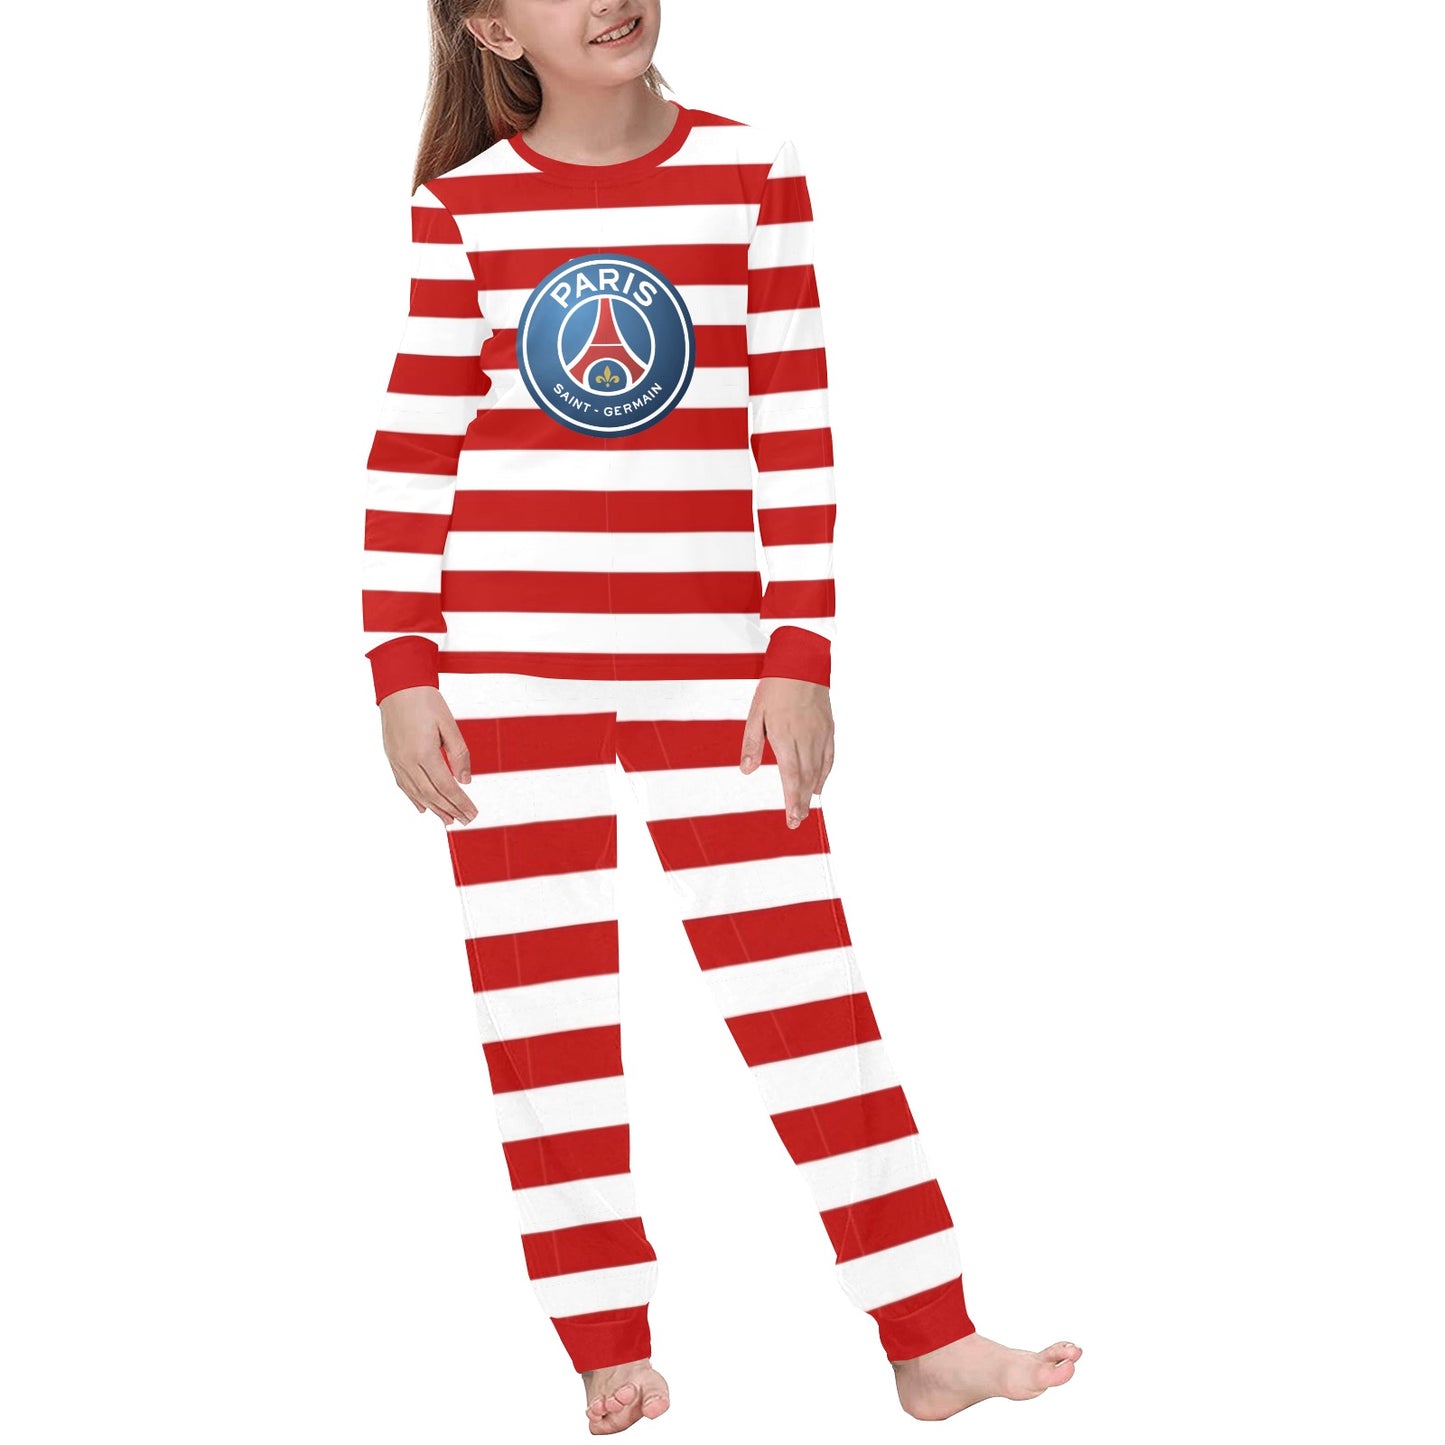 PSG Striped Soccer Pajamas • Soccer Christmas Gift • Festive Sleepwear for PSG Fans